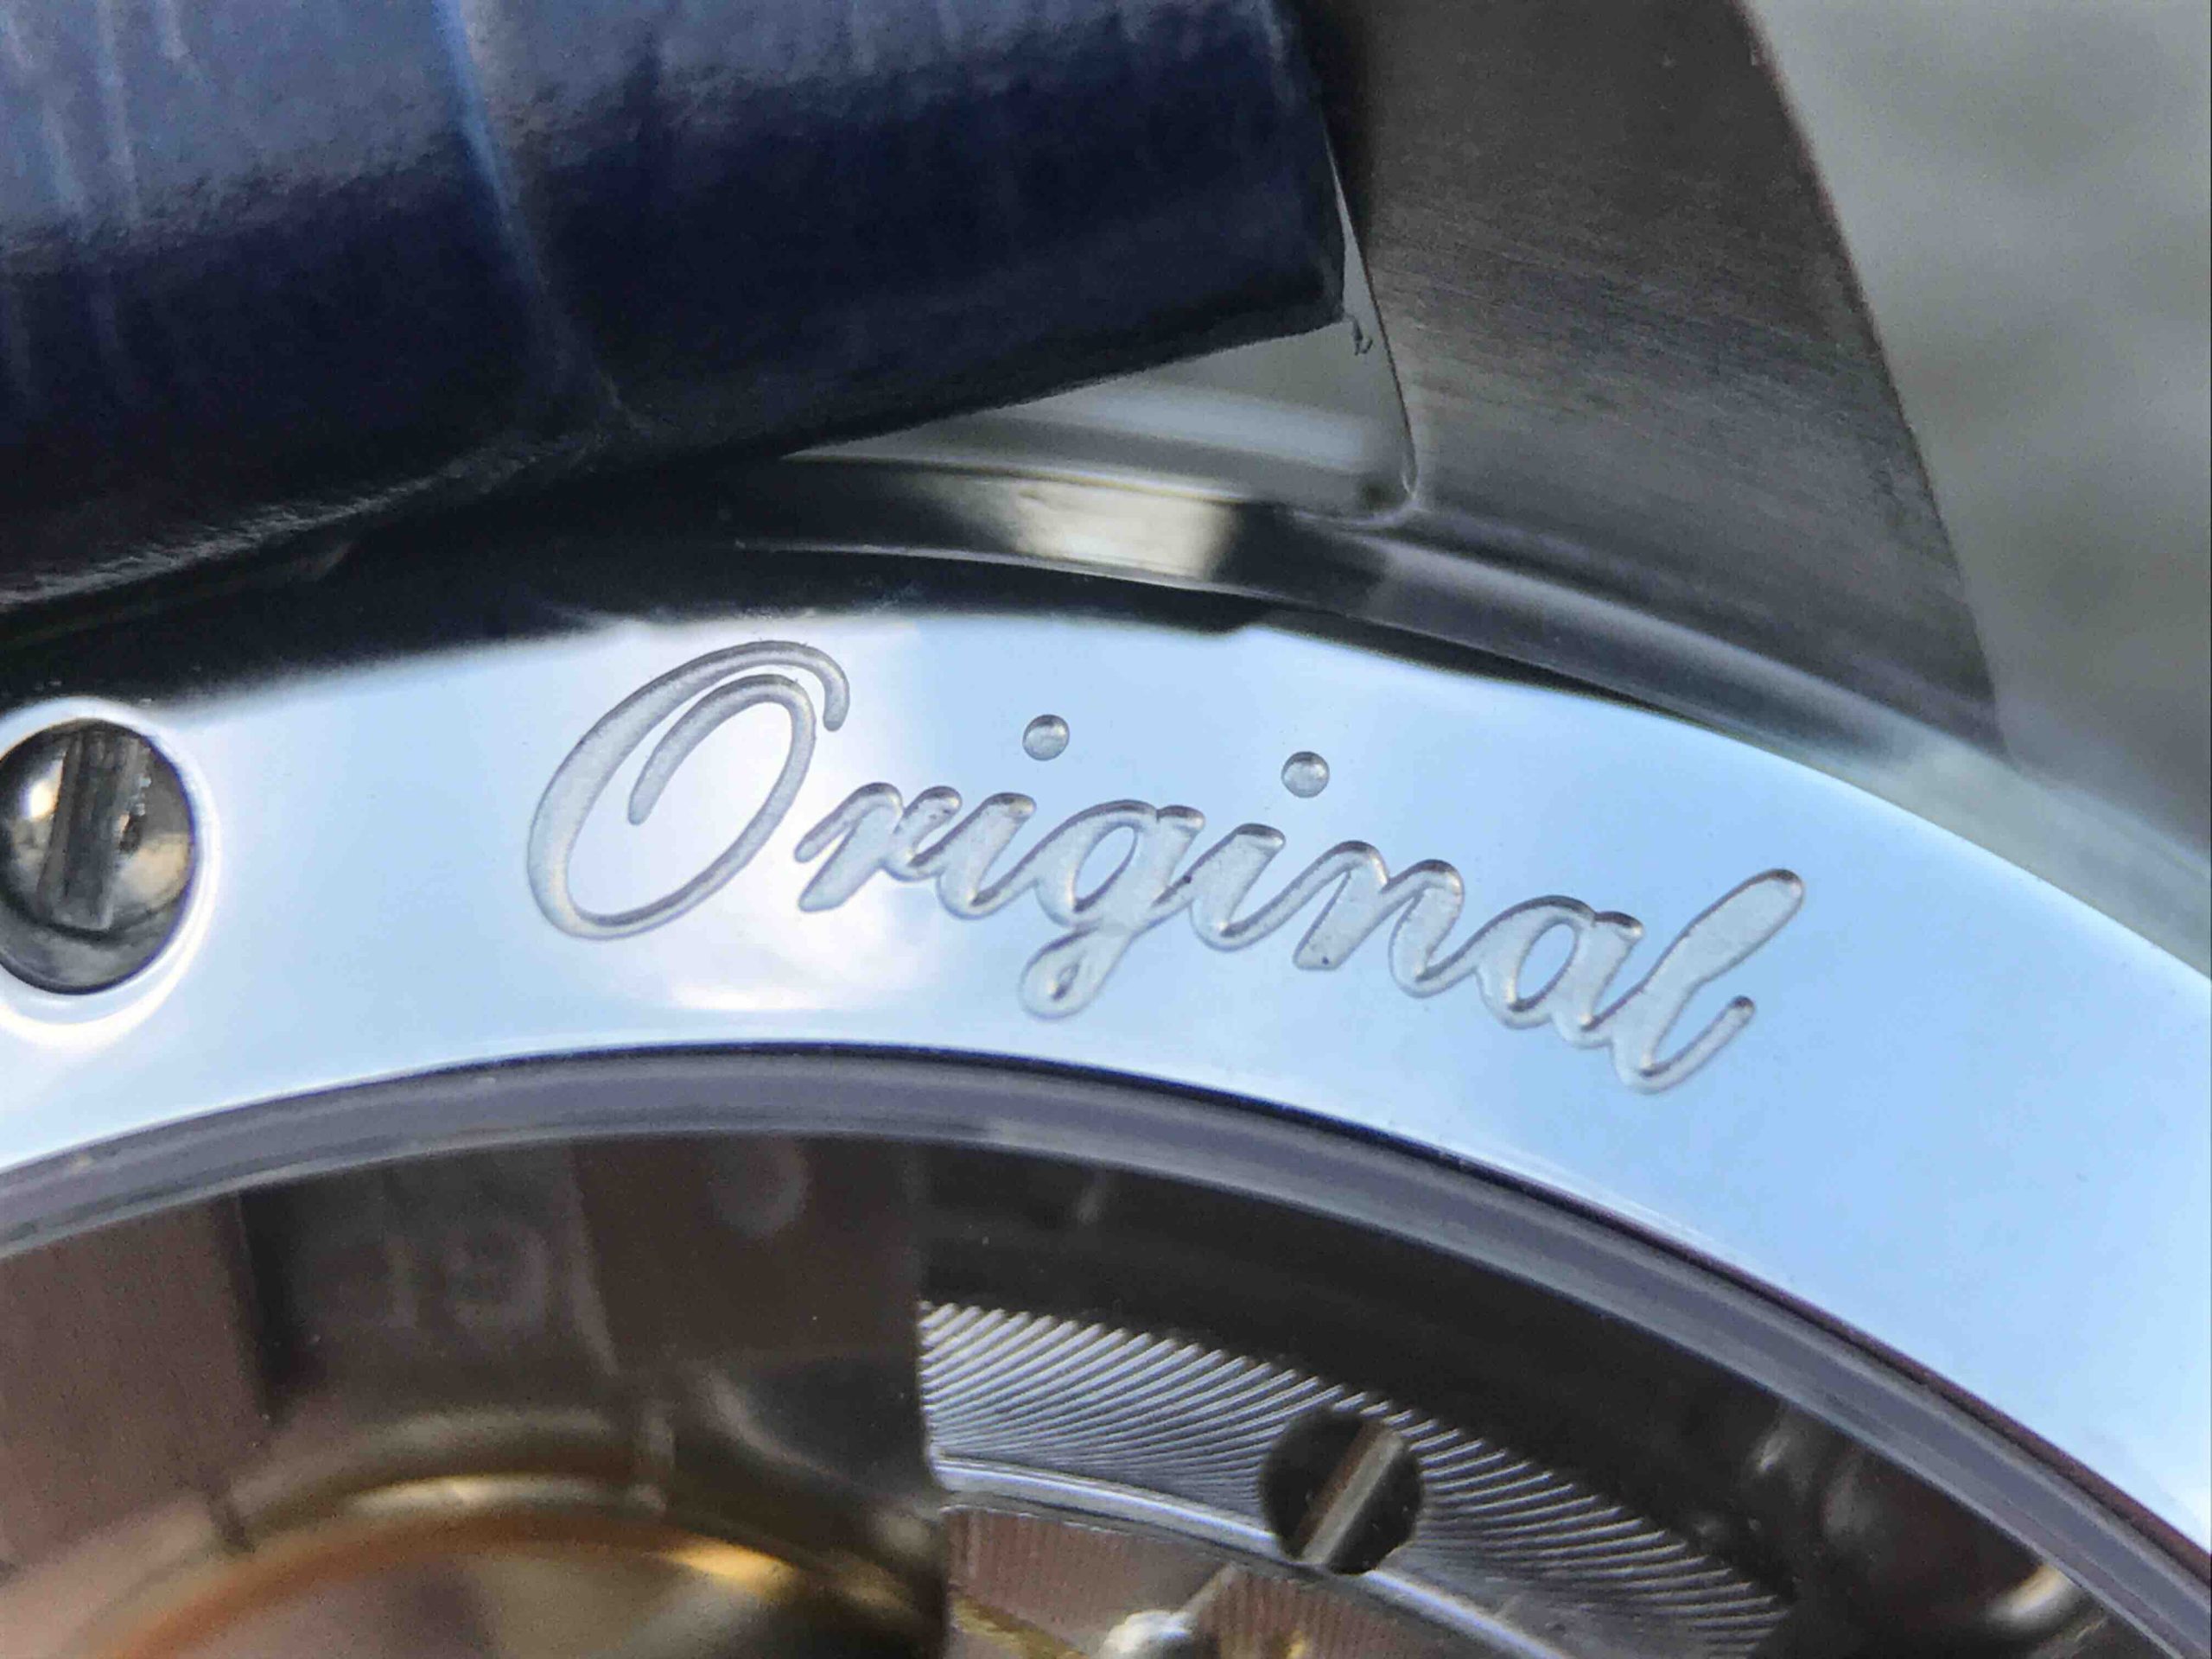 高仿格拉蘇蒂手錶價格及圖片 GF格拉蘇蒂原創議員大日歴月相100-04-32-12-04￥3180-高仿格拉蘇蒂